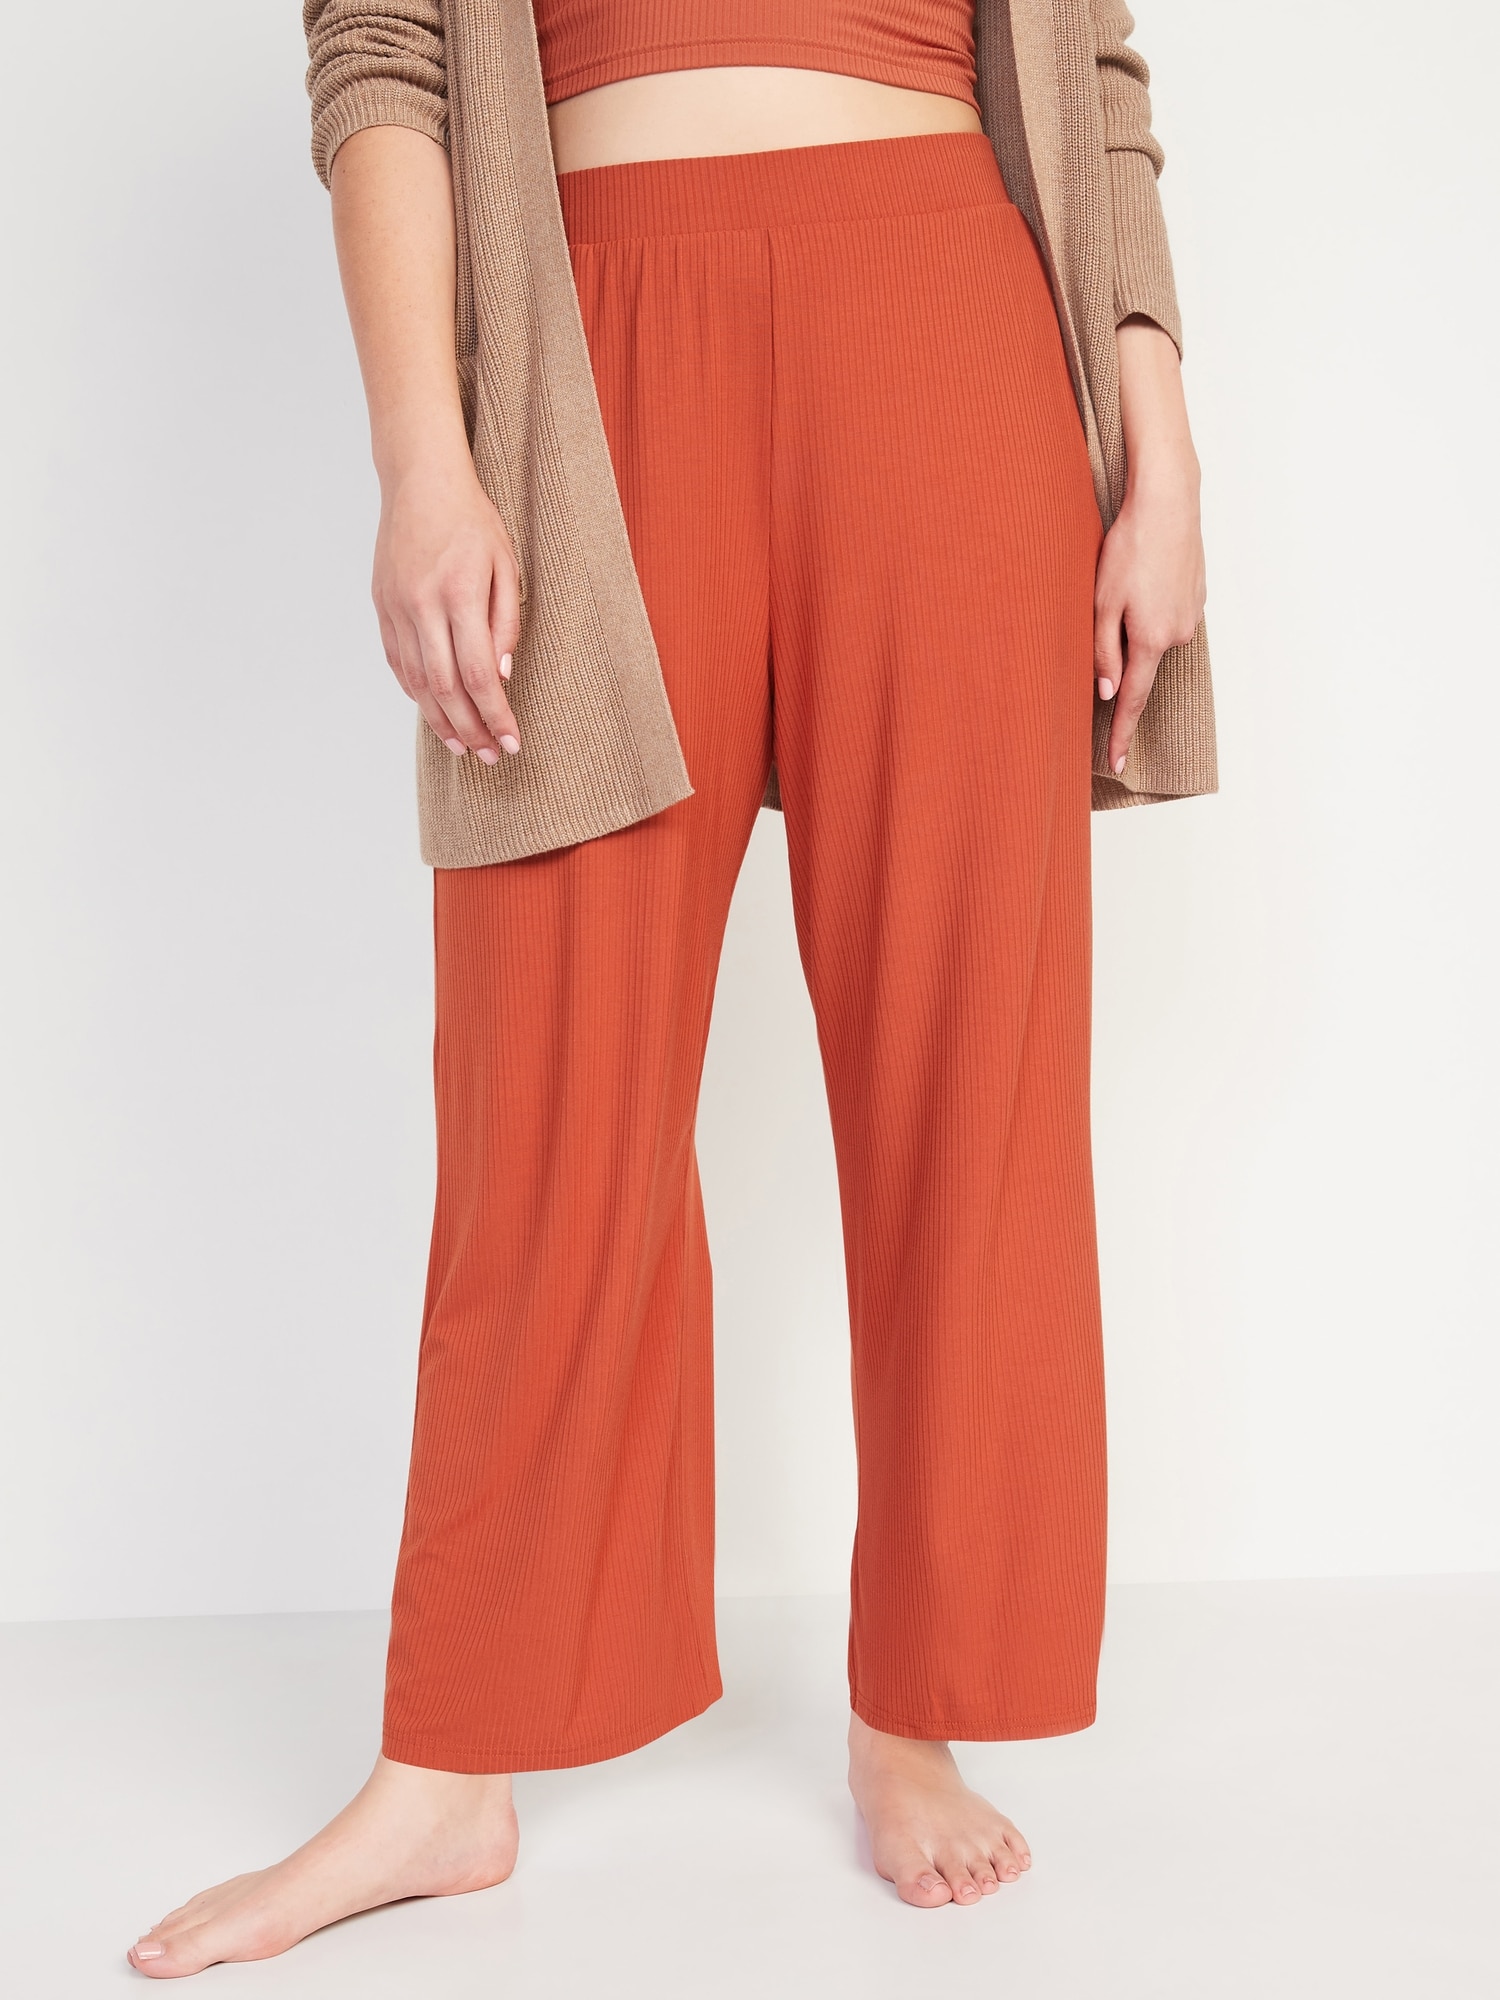 Rust Orange Lounge Pants, Women's Loungewear